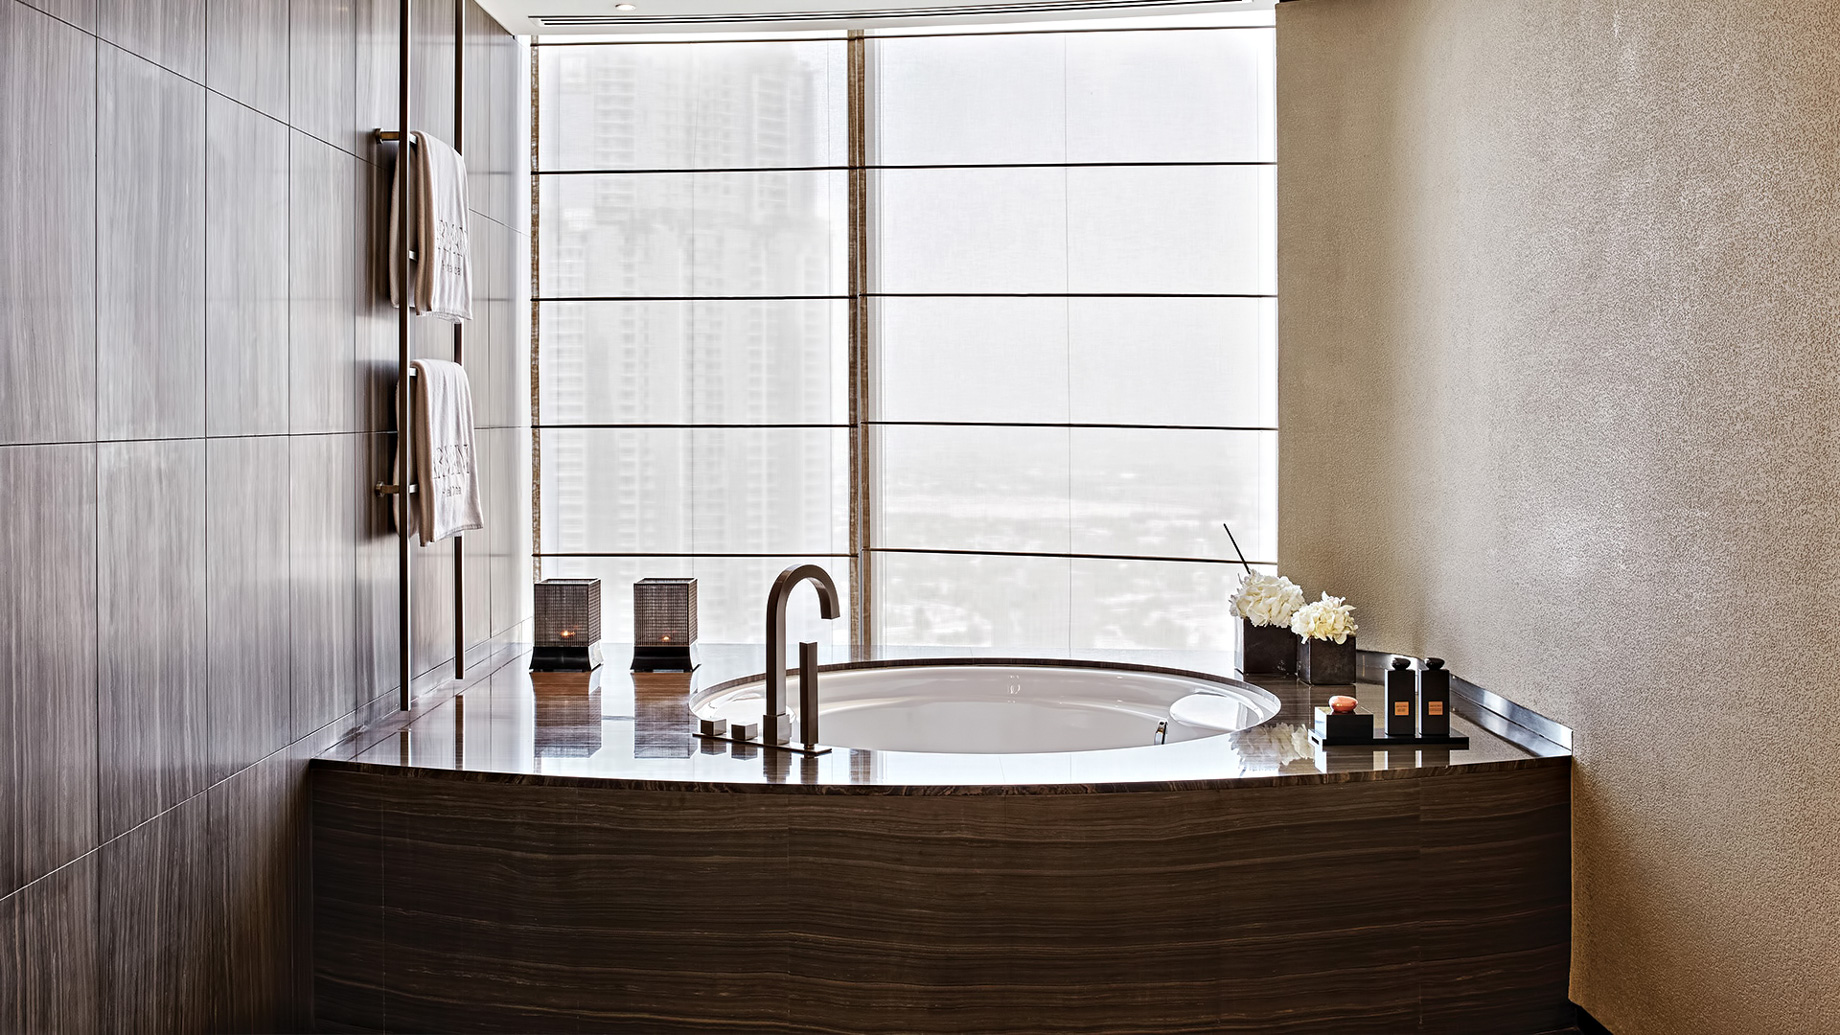 Armani Hotel Dubai – Burj Khalifa, Dubai, UAE – Armani Suite Bathroom Tub